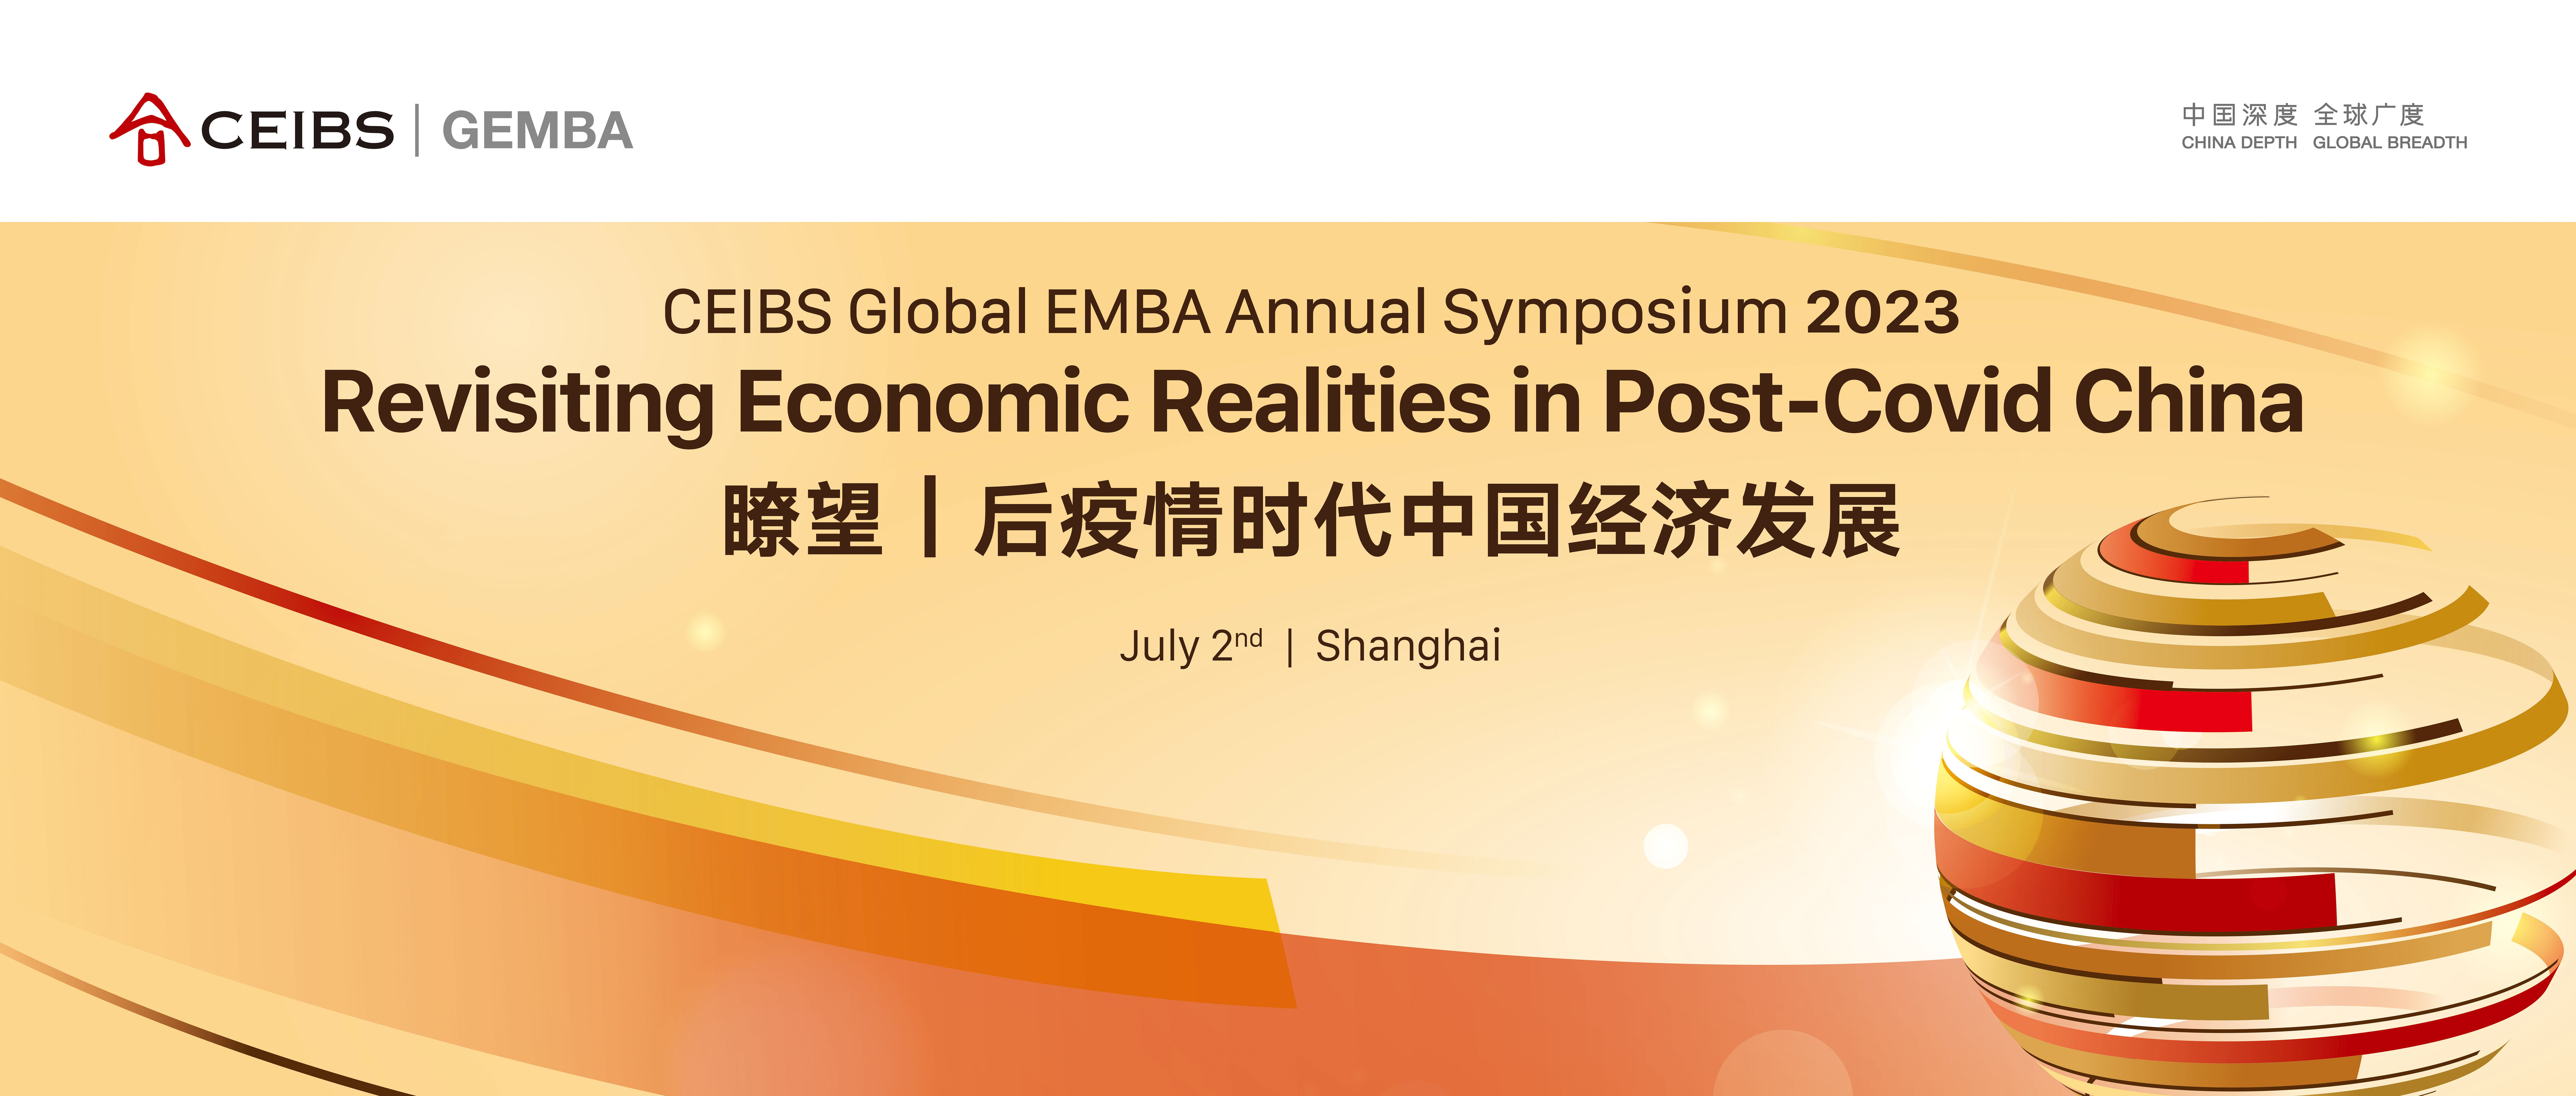 中欧Global EMBA第二届年度论坛